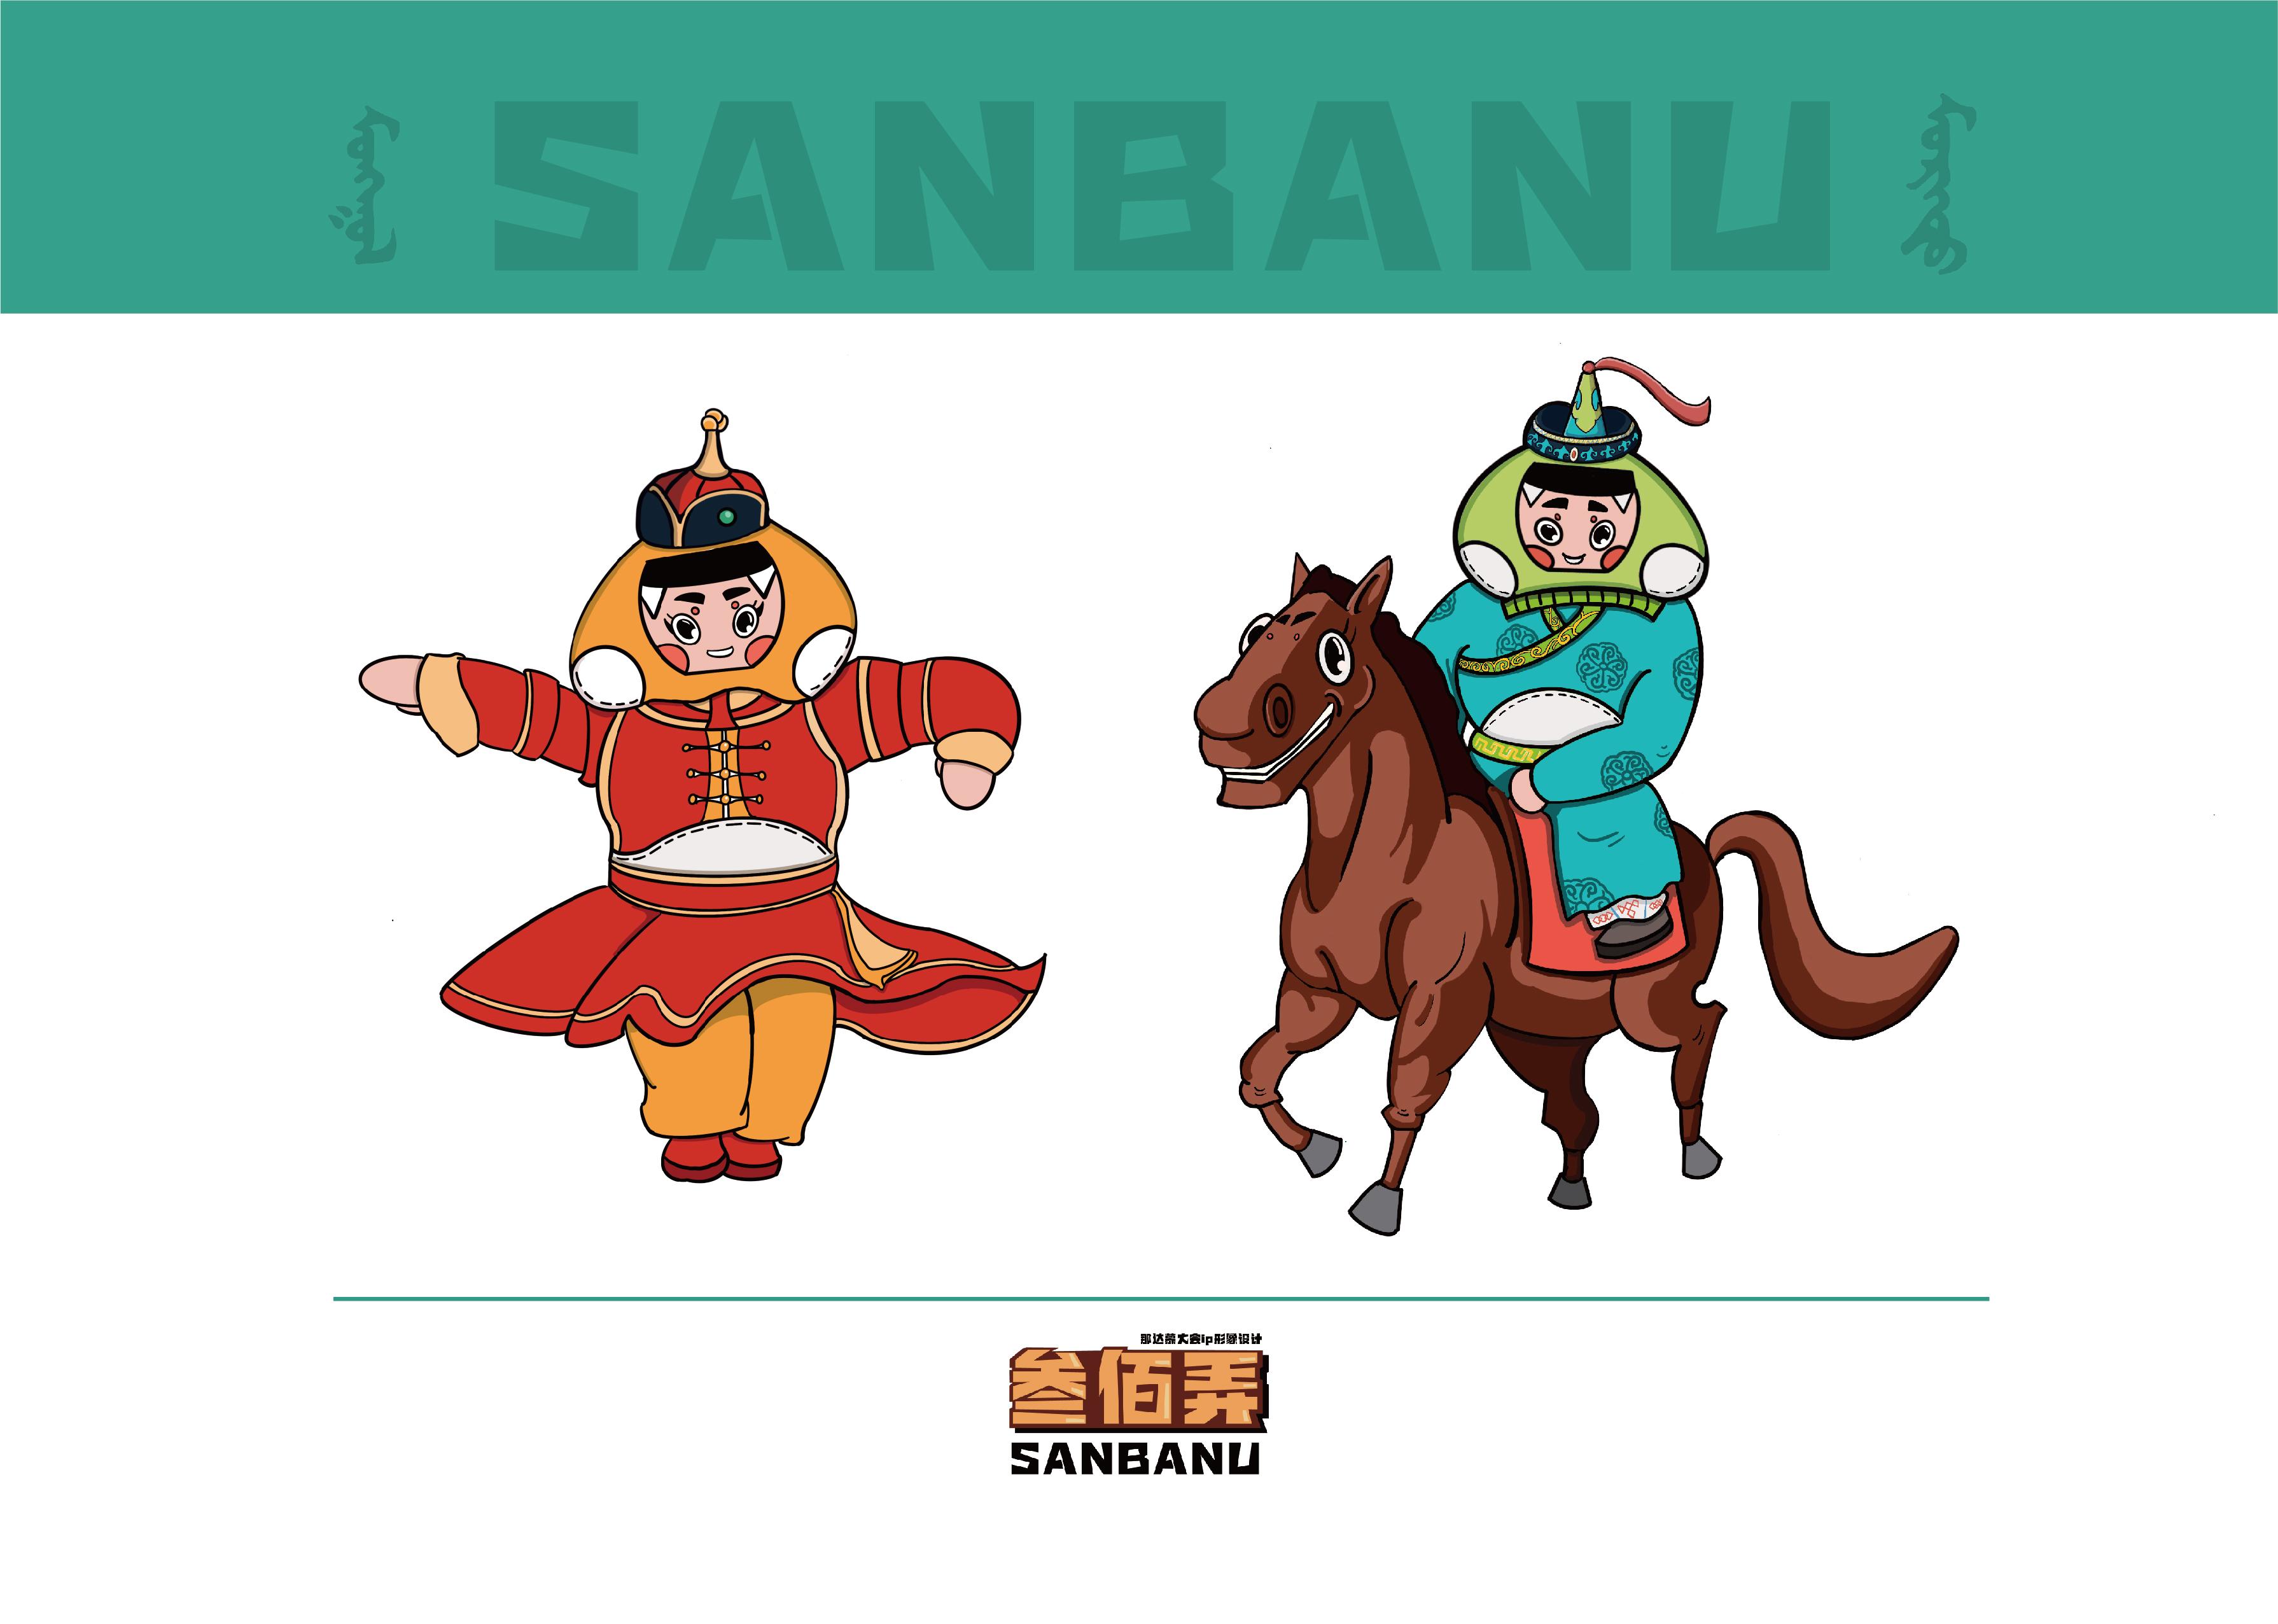 那达慕大会是蒙古族历史悠久的传统节日,在蒙古族人民的生活中占有